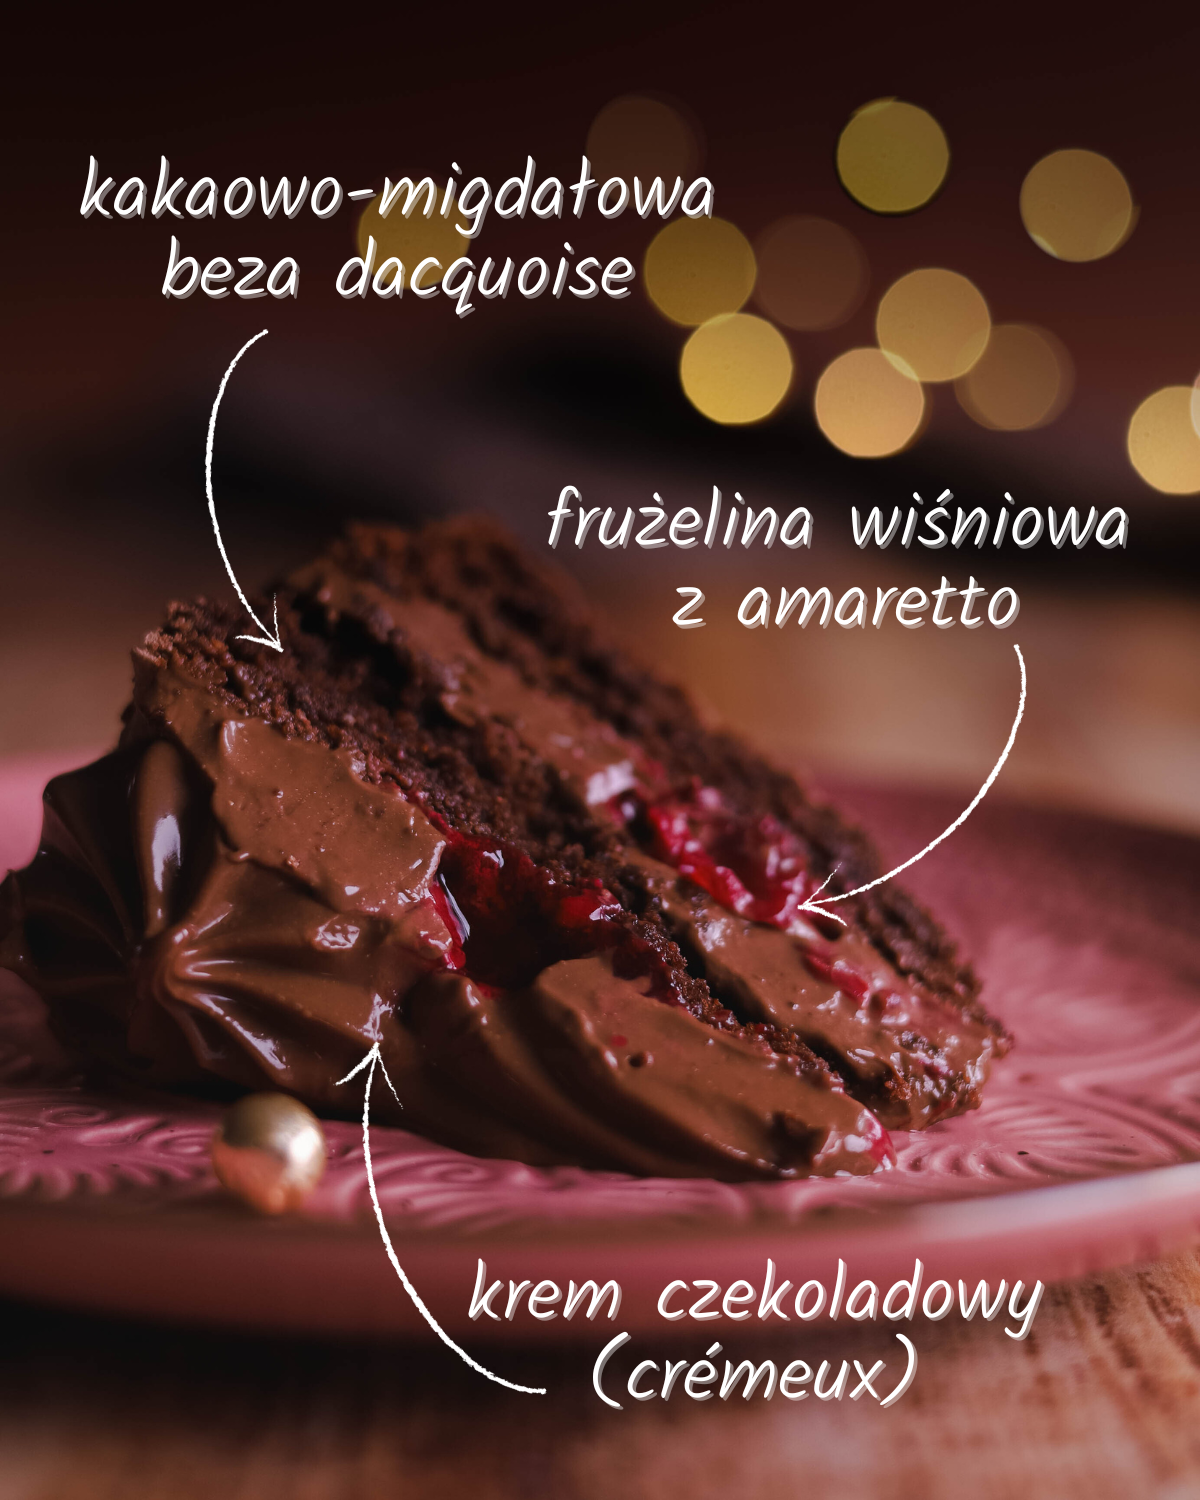 Migdałowy tort dacquoise z kremem czekoladowym i wiśniami z amaretto